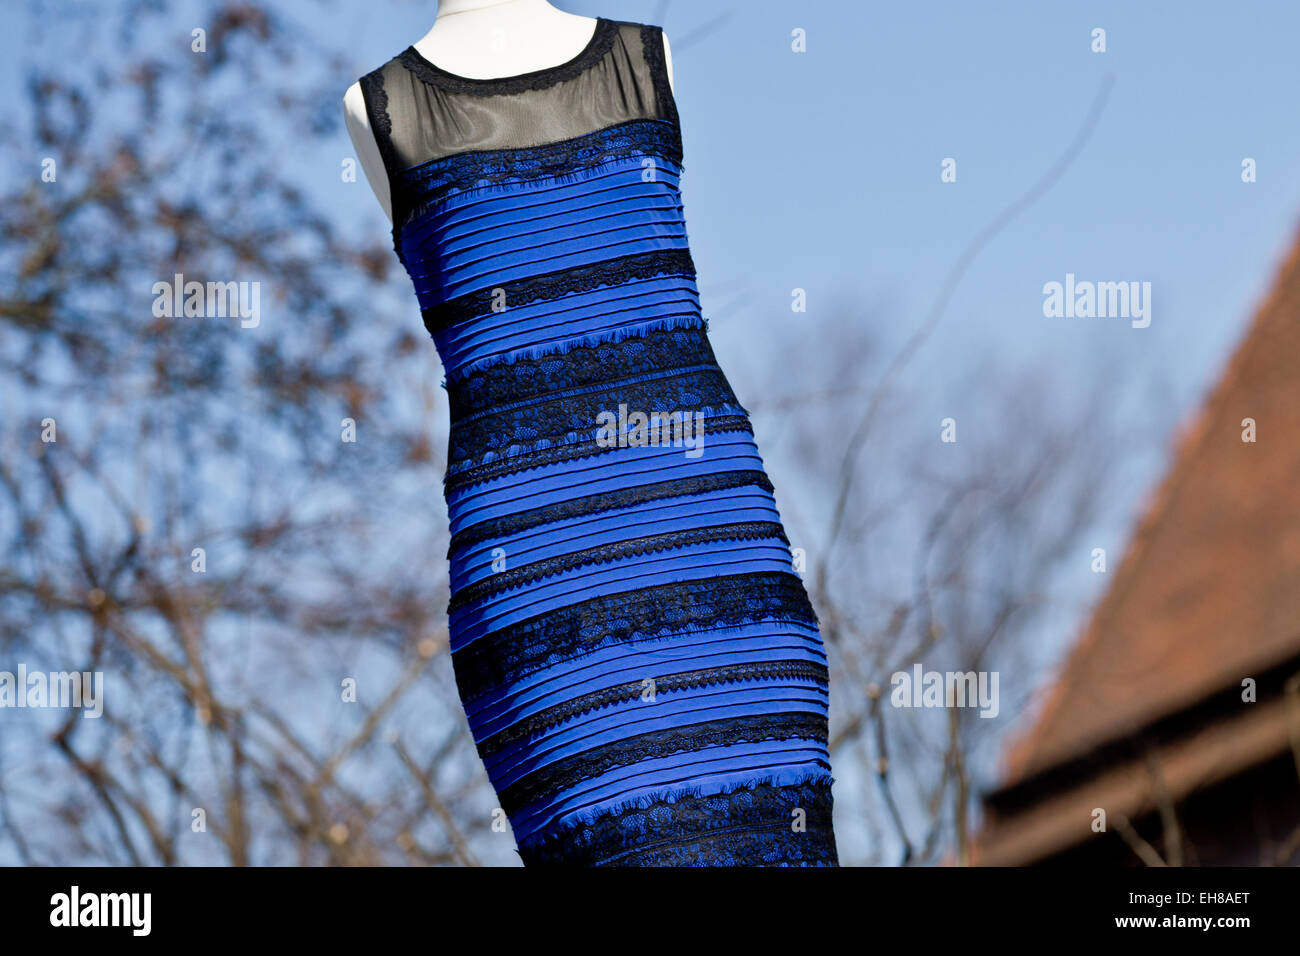 Nuremberg, Allemagne. 09Th Mar, 2015. Le modèle d'une robe rayée de  beaucoup de discussions, ce qui est devenu une sensation sur internet, est  vu dans le soleil à l'avant du musée 'Turm